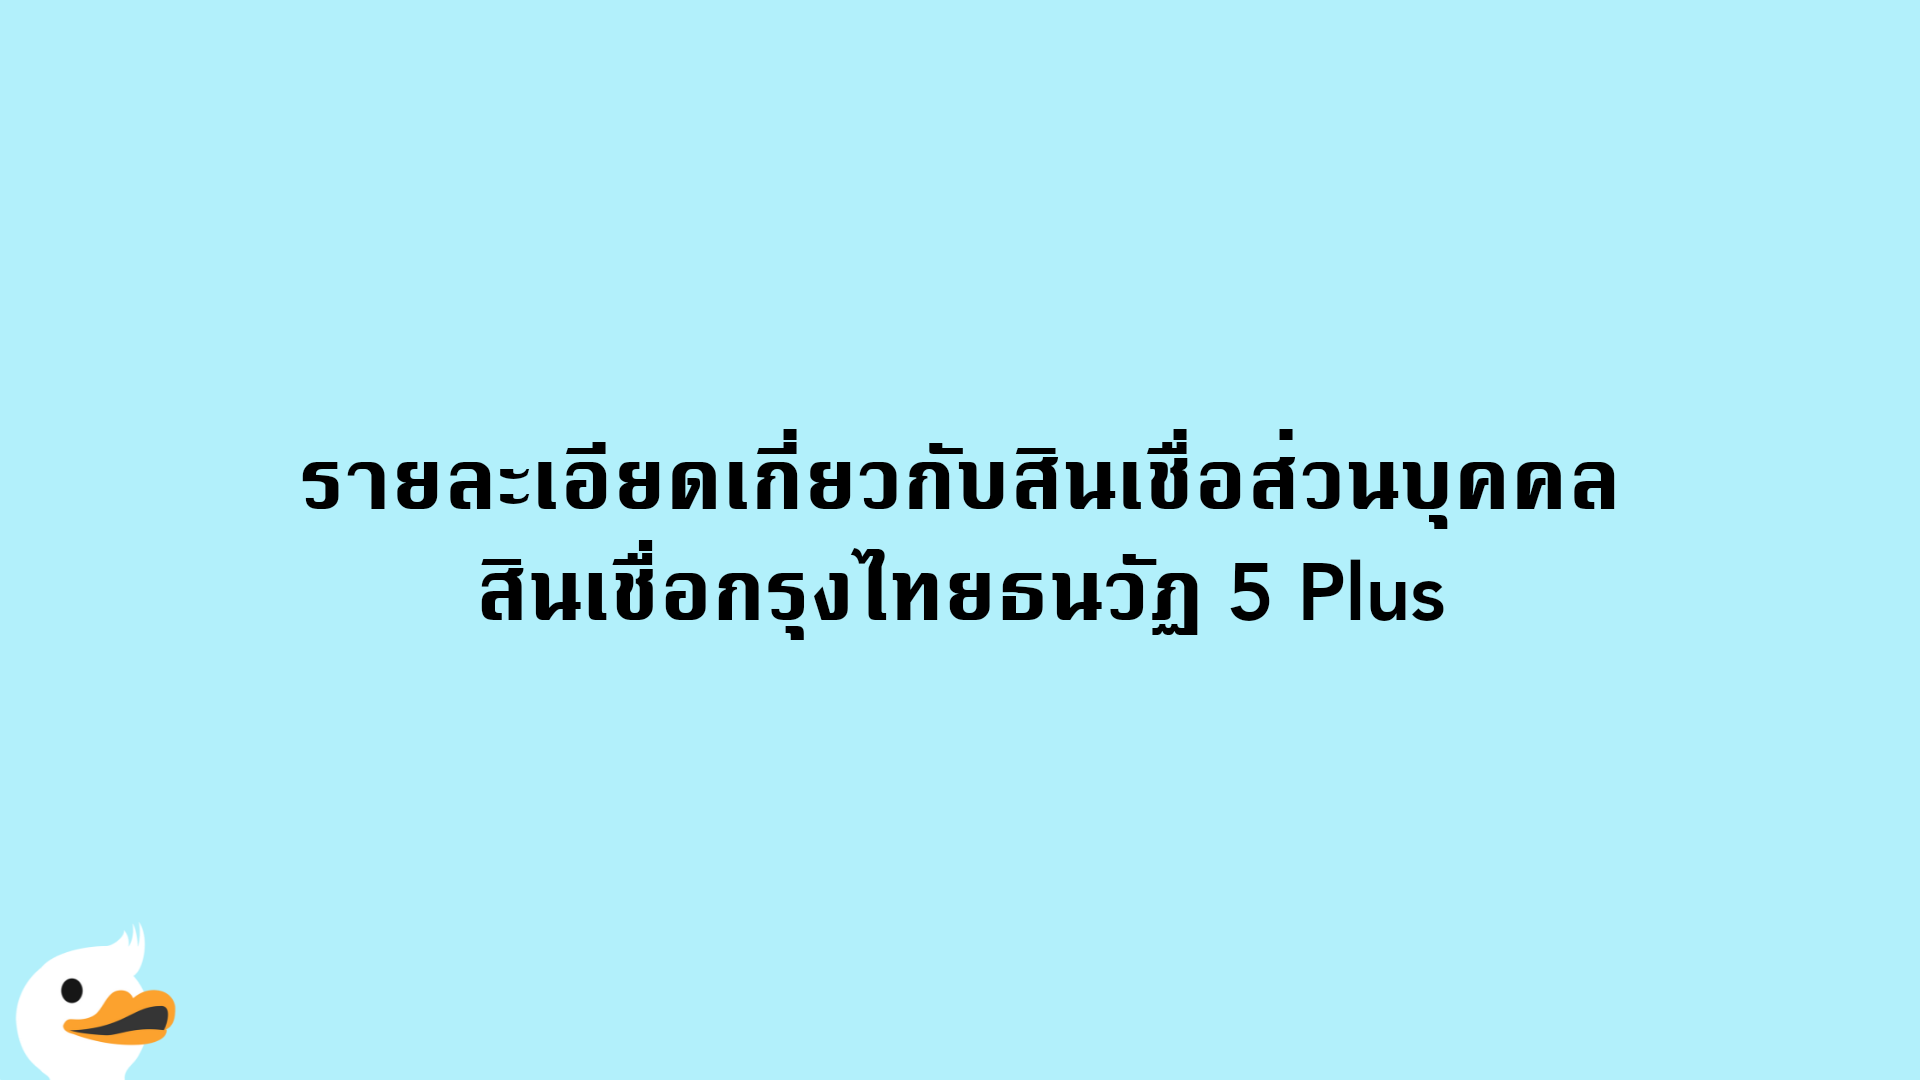 รายละเอียดเกี่ยวกับสินเชื่อส่วนบุคคล สินเชื่อกรุงไทยธนวัฏ 5 Plus